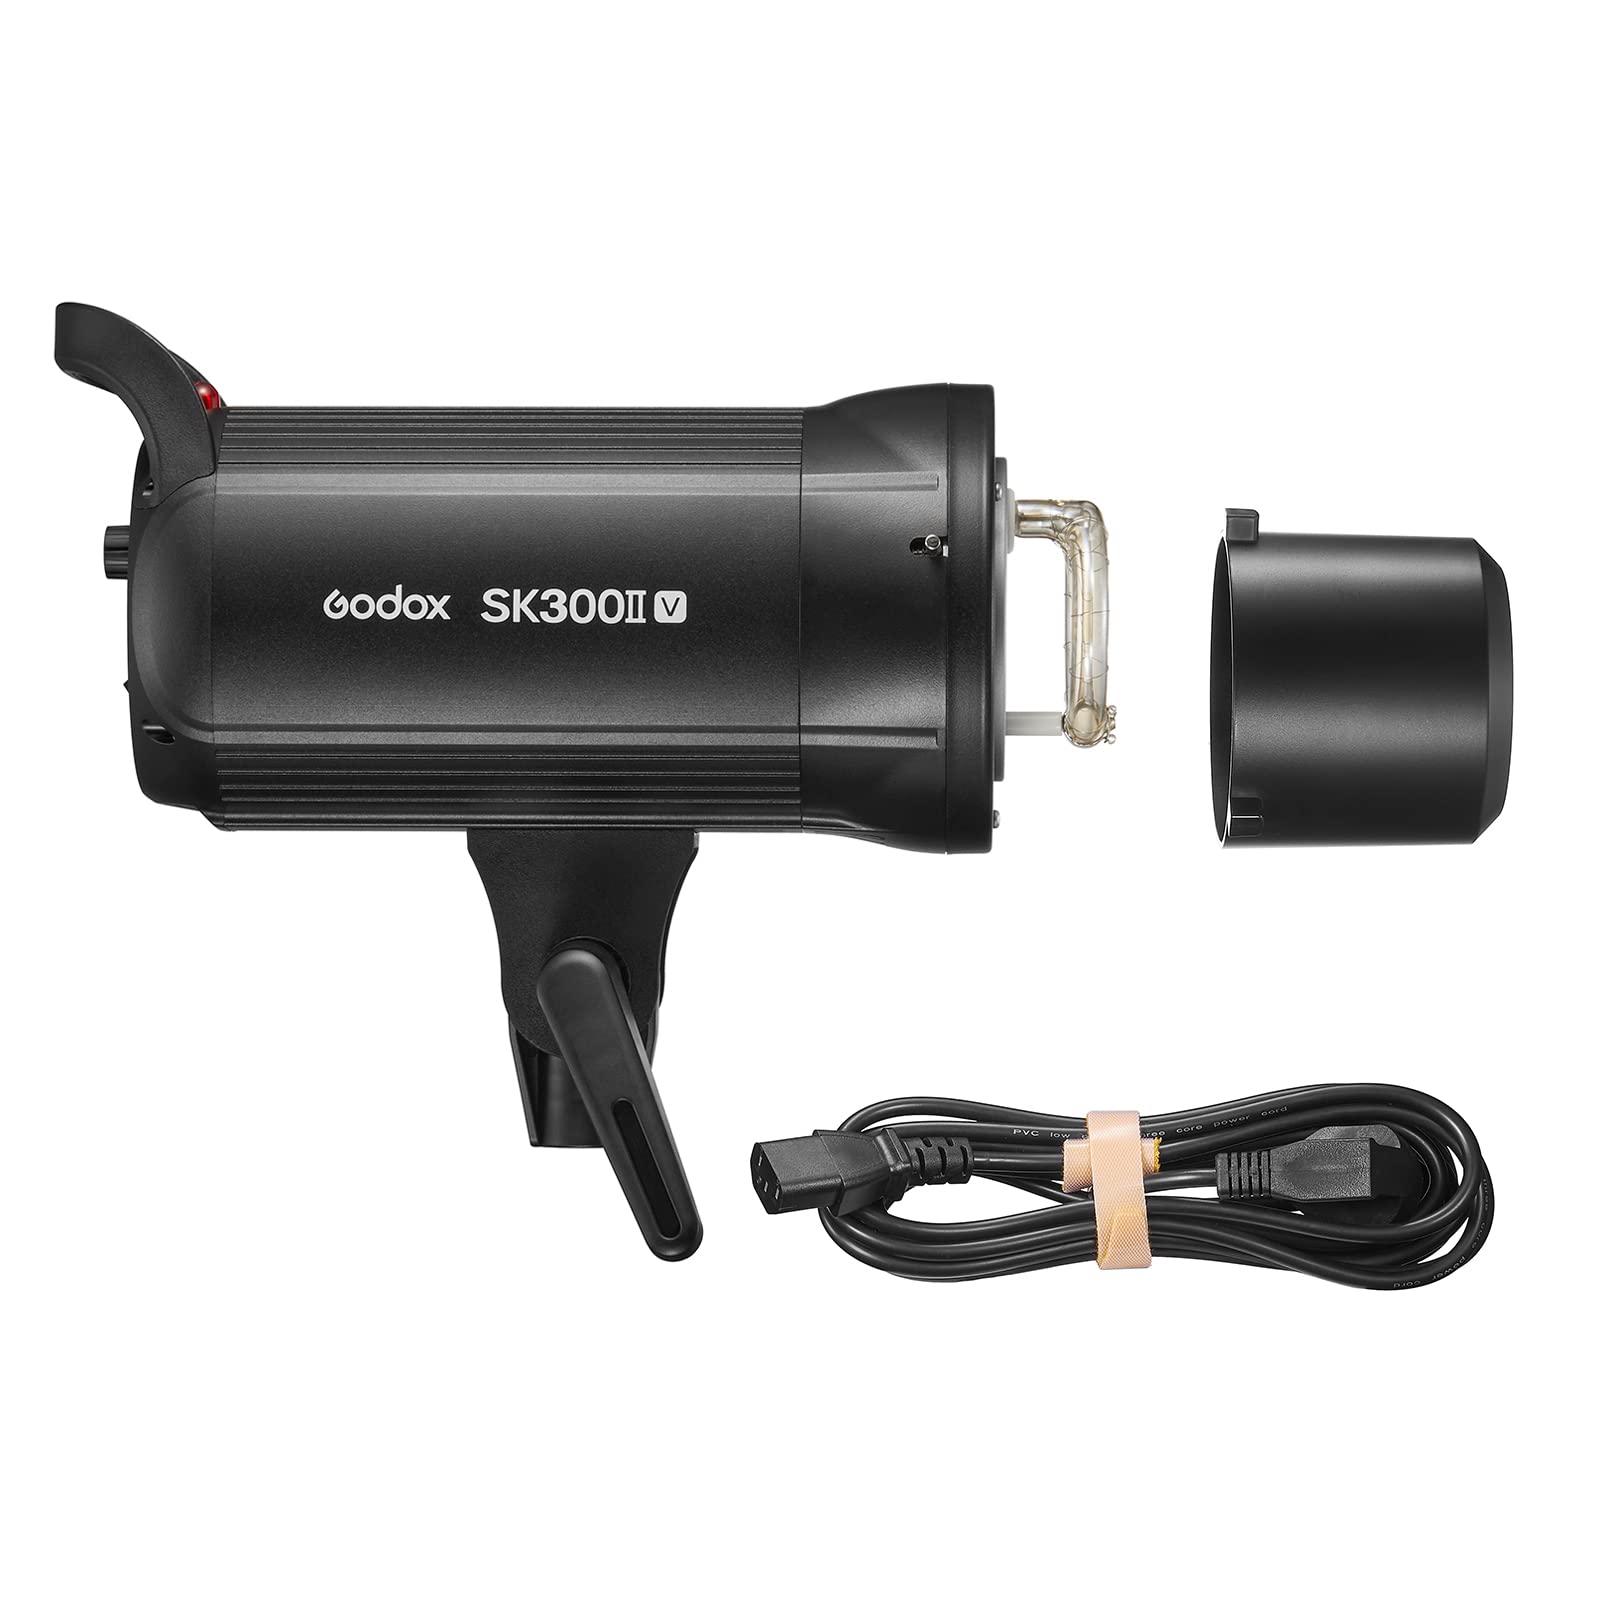 Godox SK300II-V 300Ws モノブロックストロボ スタジオ フラッシュ ライト 電源 GN58 5600±200K ストロボ ライト 内蔵 2.4G ワイヤレス